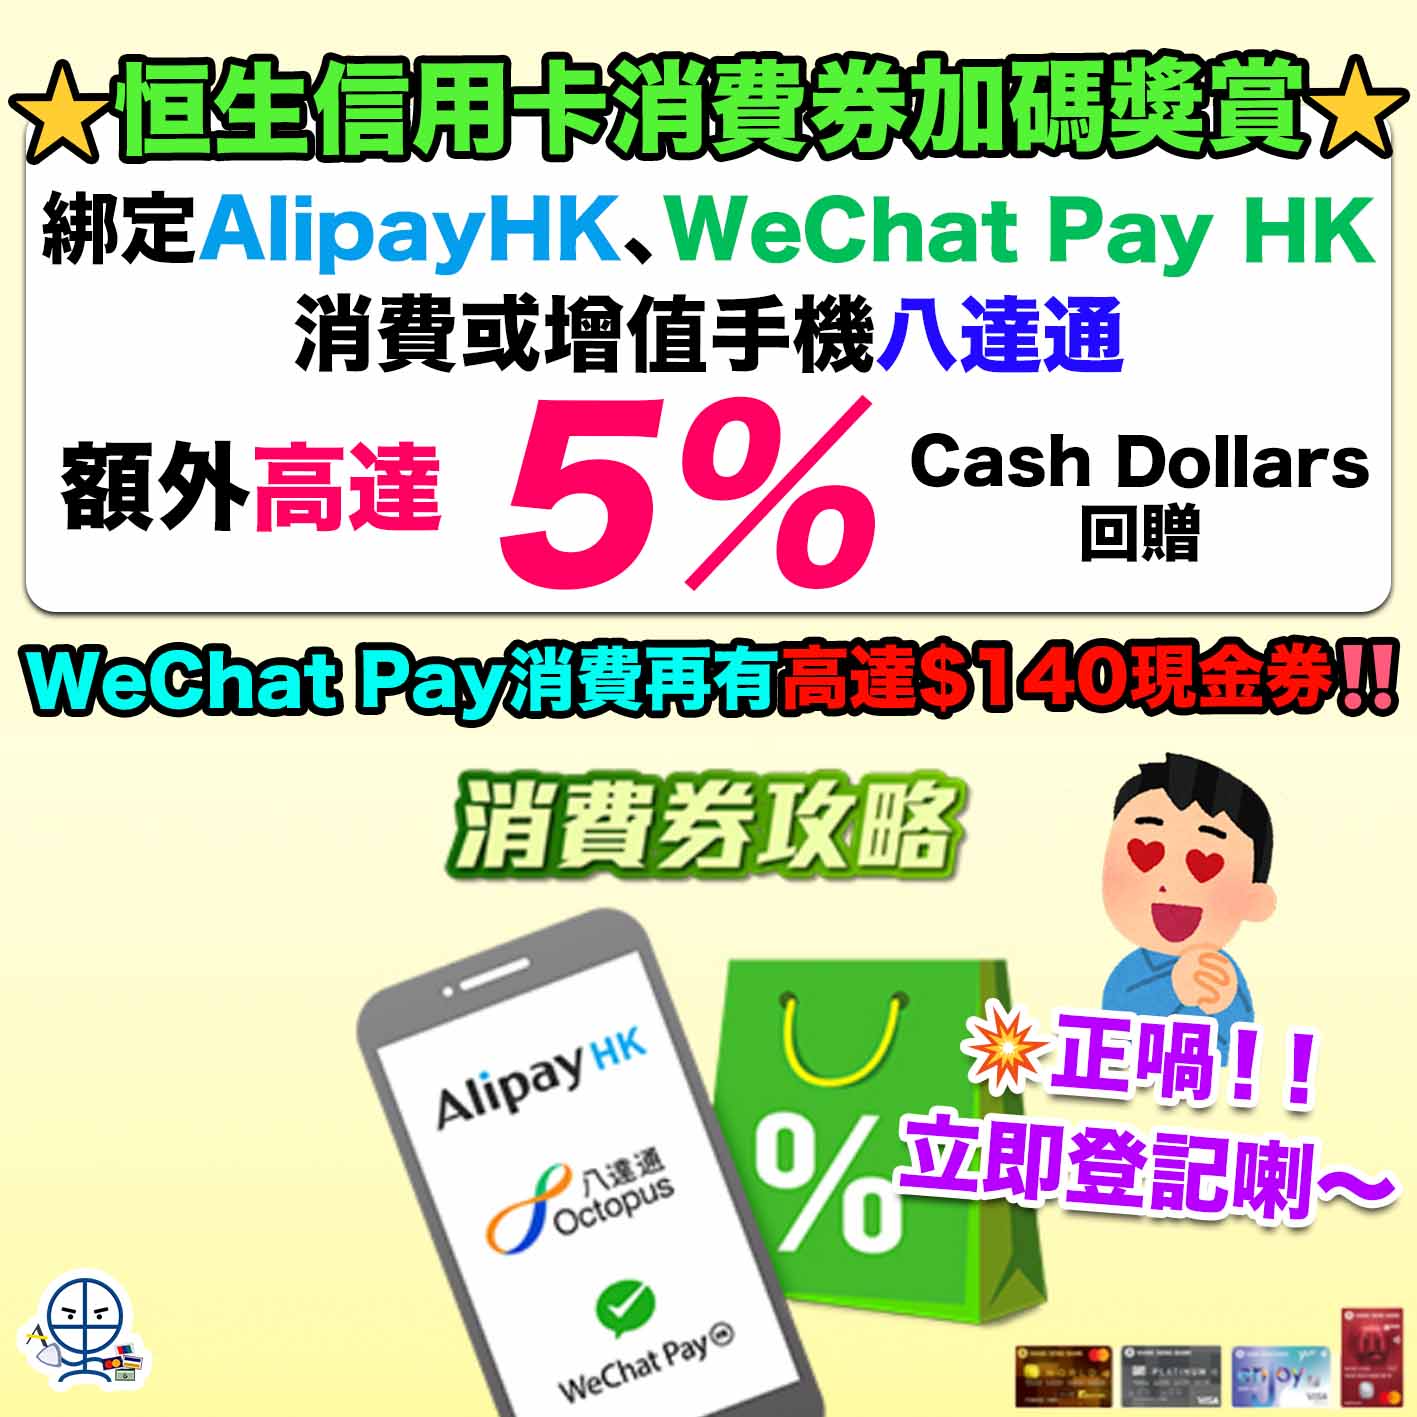 恒生信用卡-消費券攻略-AlipayHK-WeChat Pay HK-八達通-Cash Dollars回贈